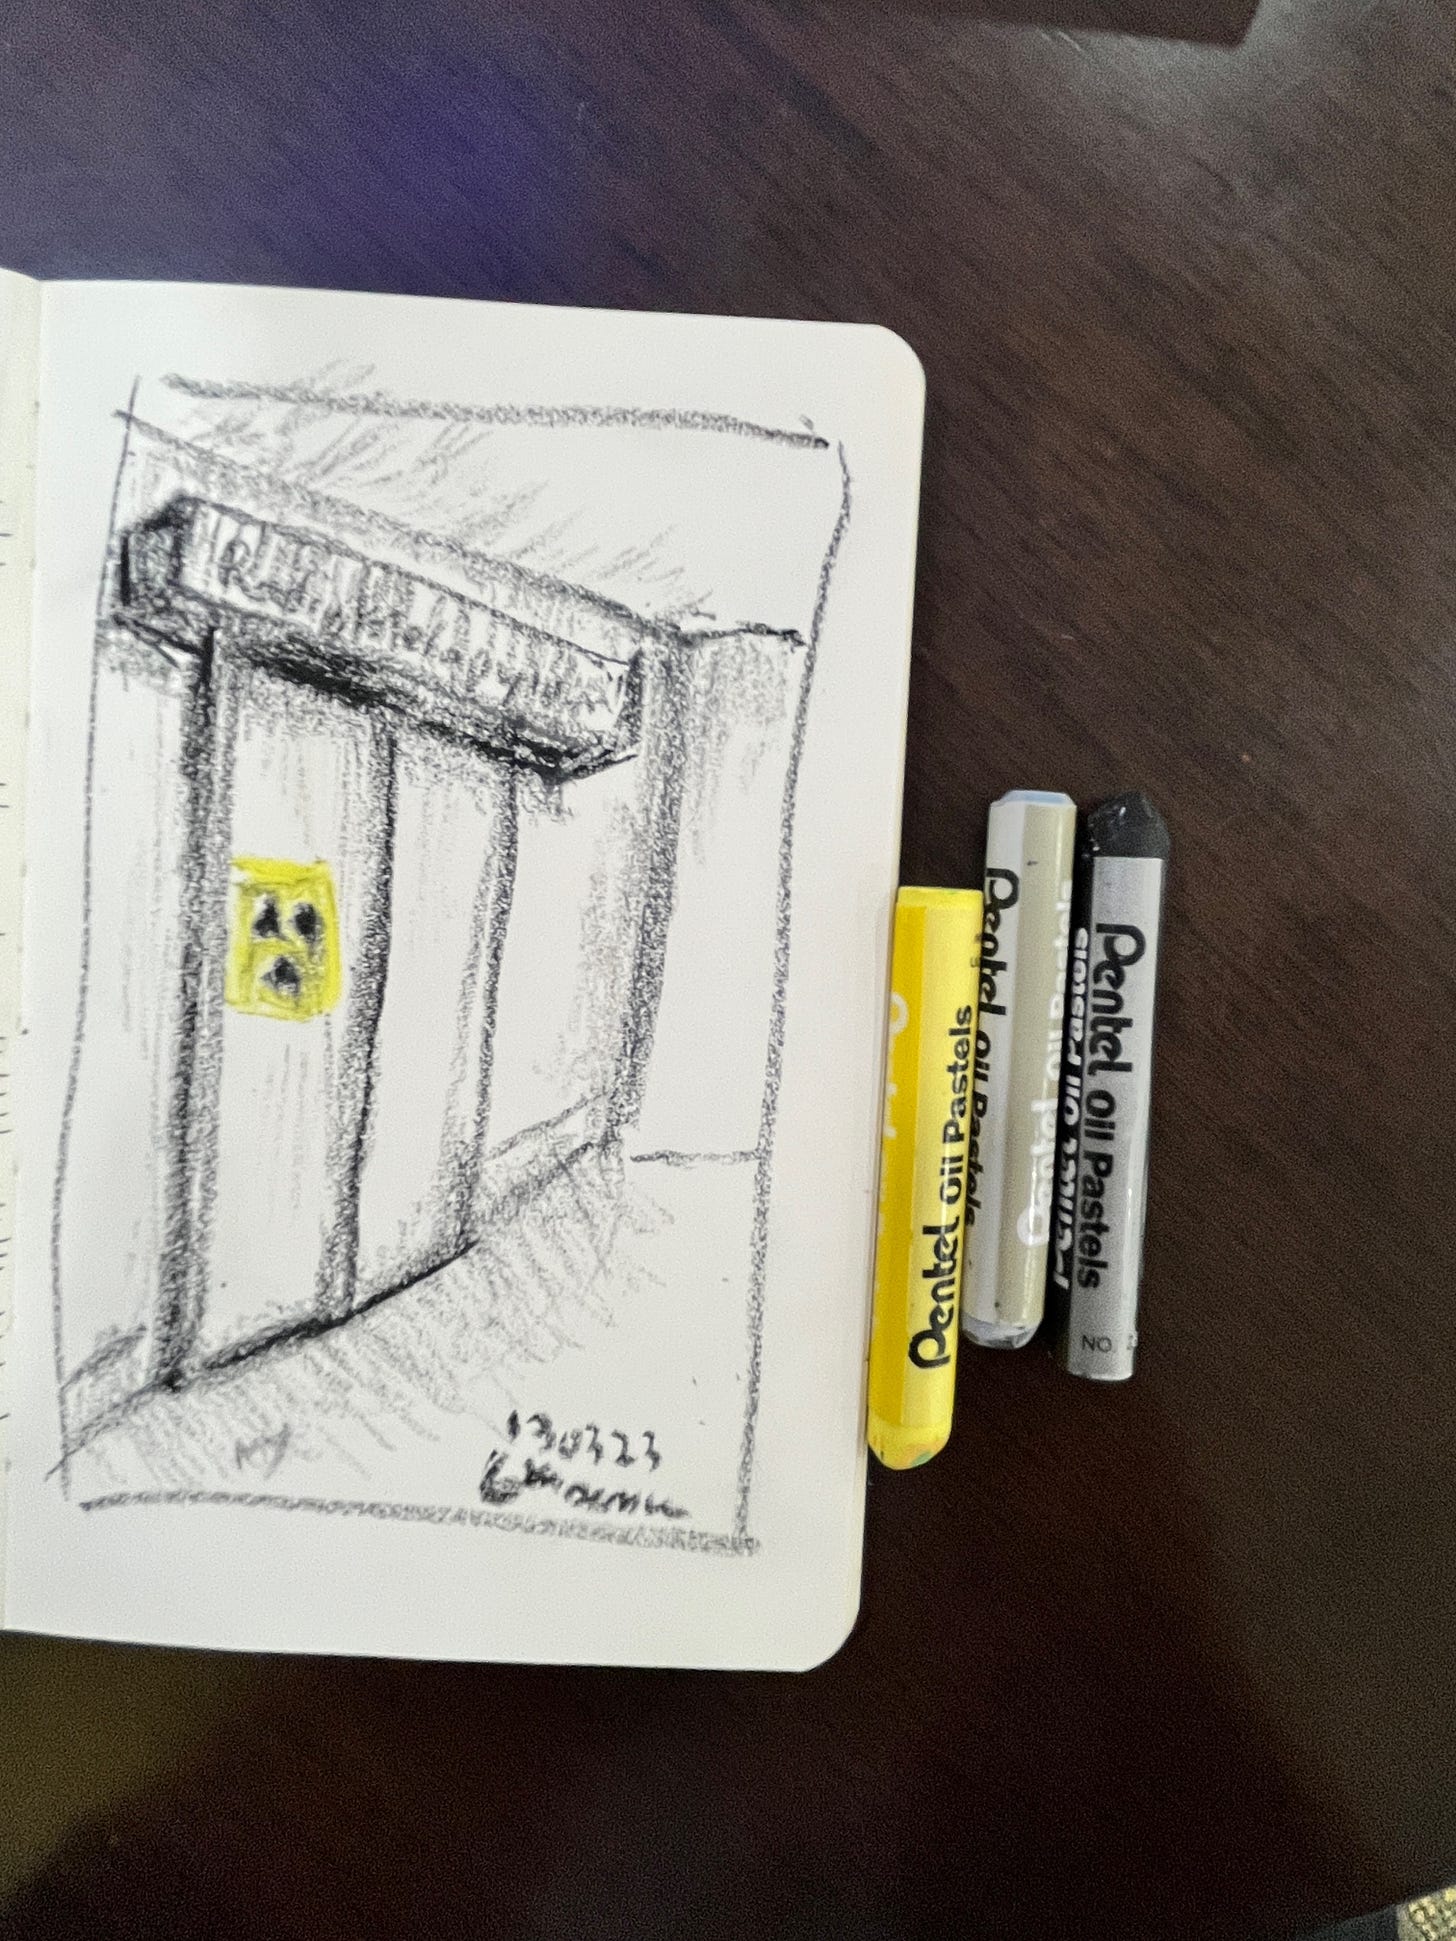 image: crayon sketch of a closed radiotherapy room door